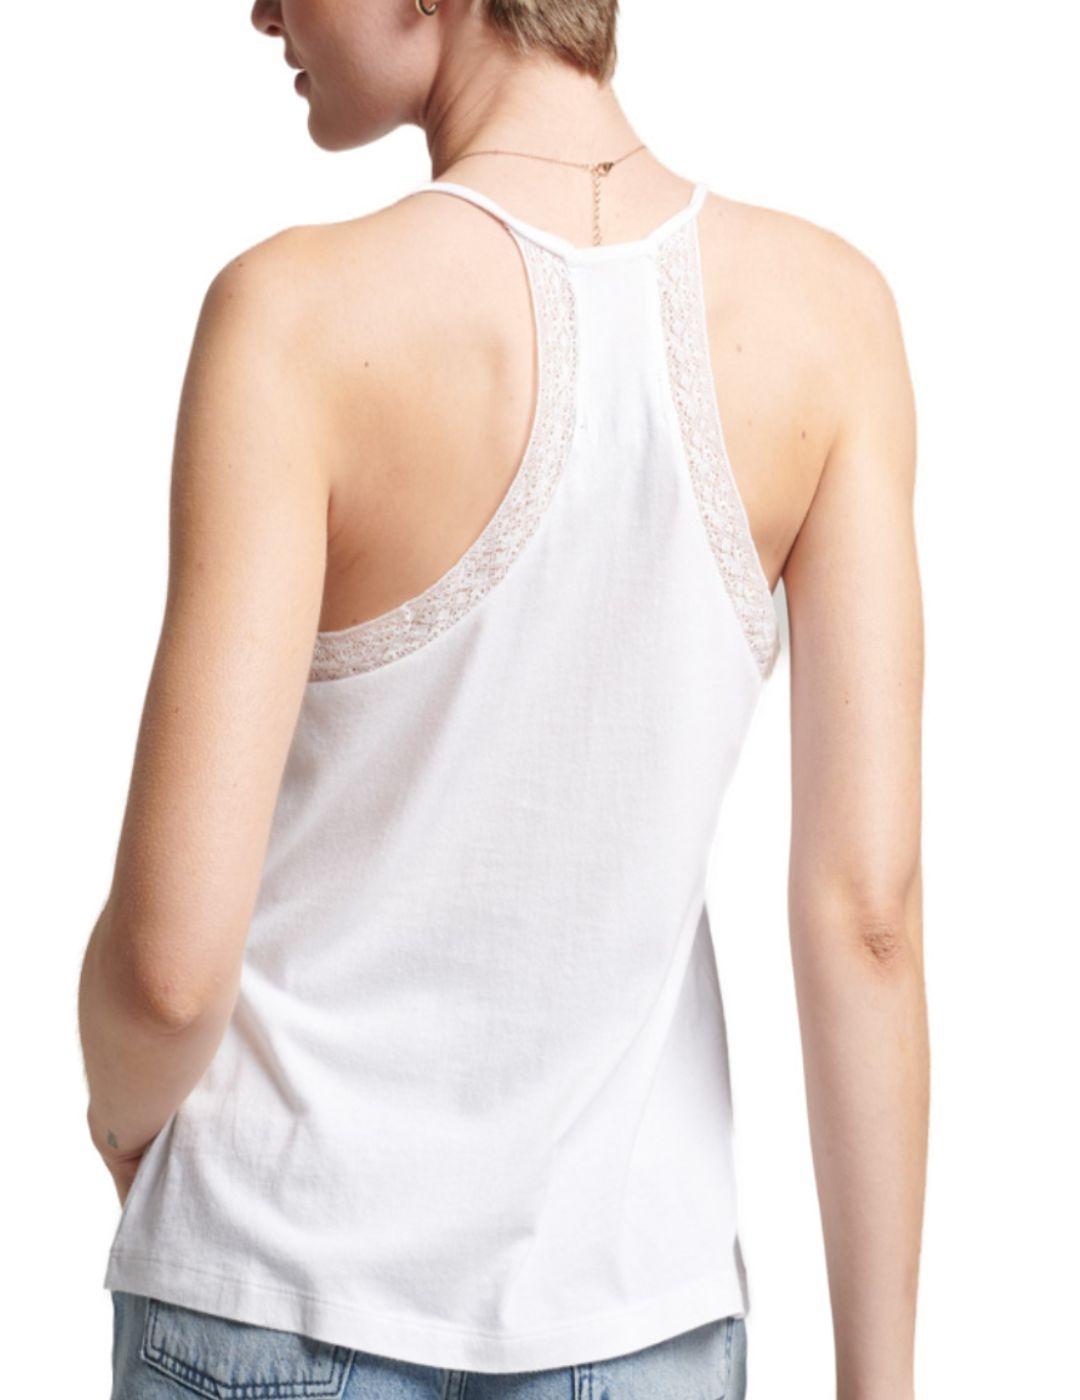 Camiseta Superdry Studios Lace blanca de mujer -a